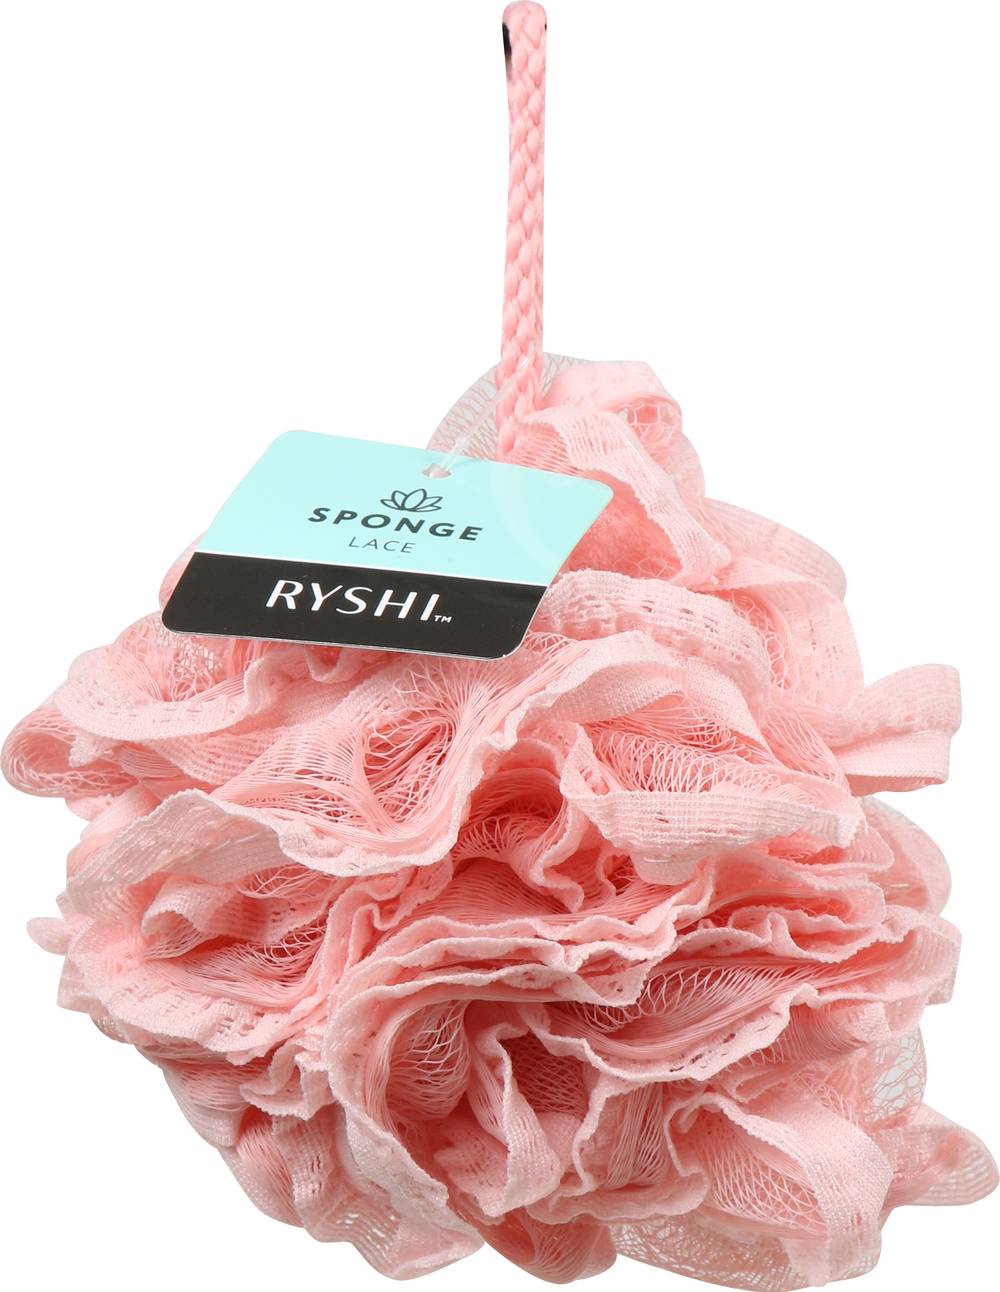 Ryshi Lace Sponge